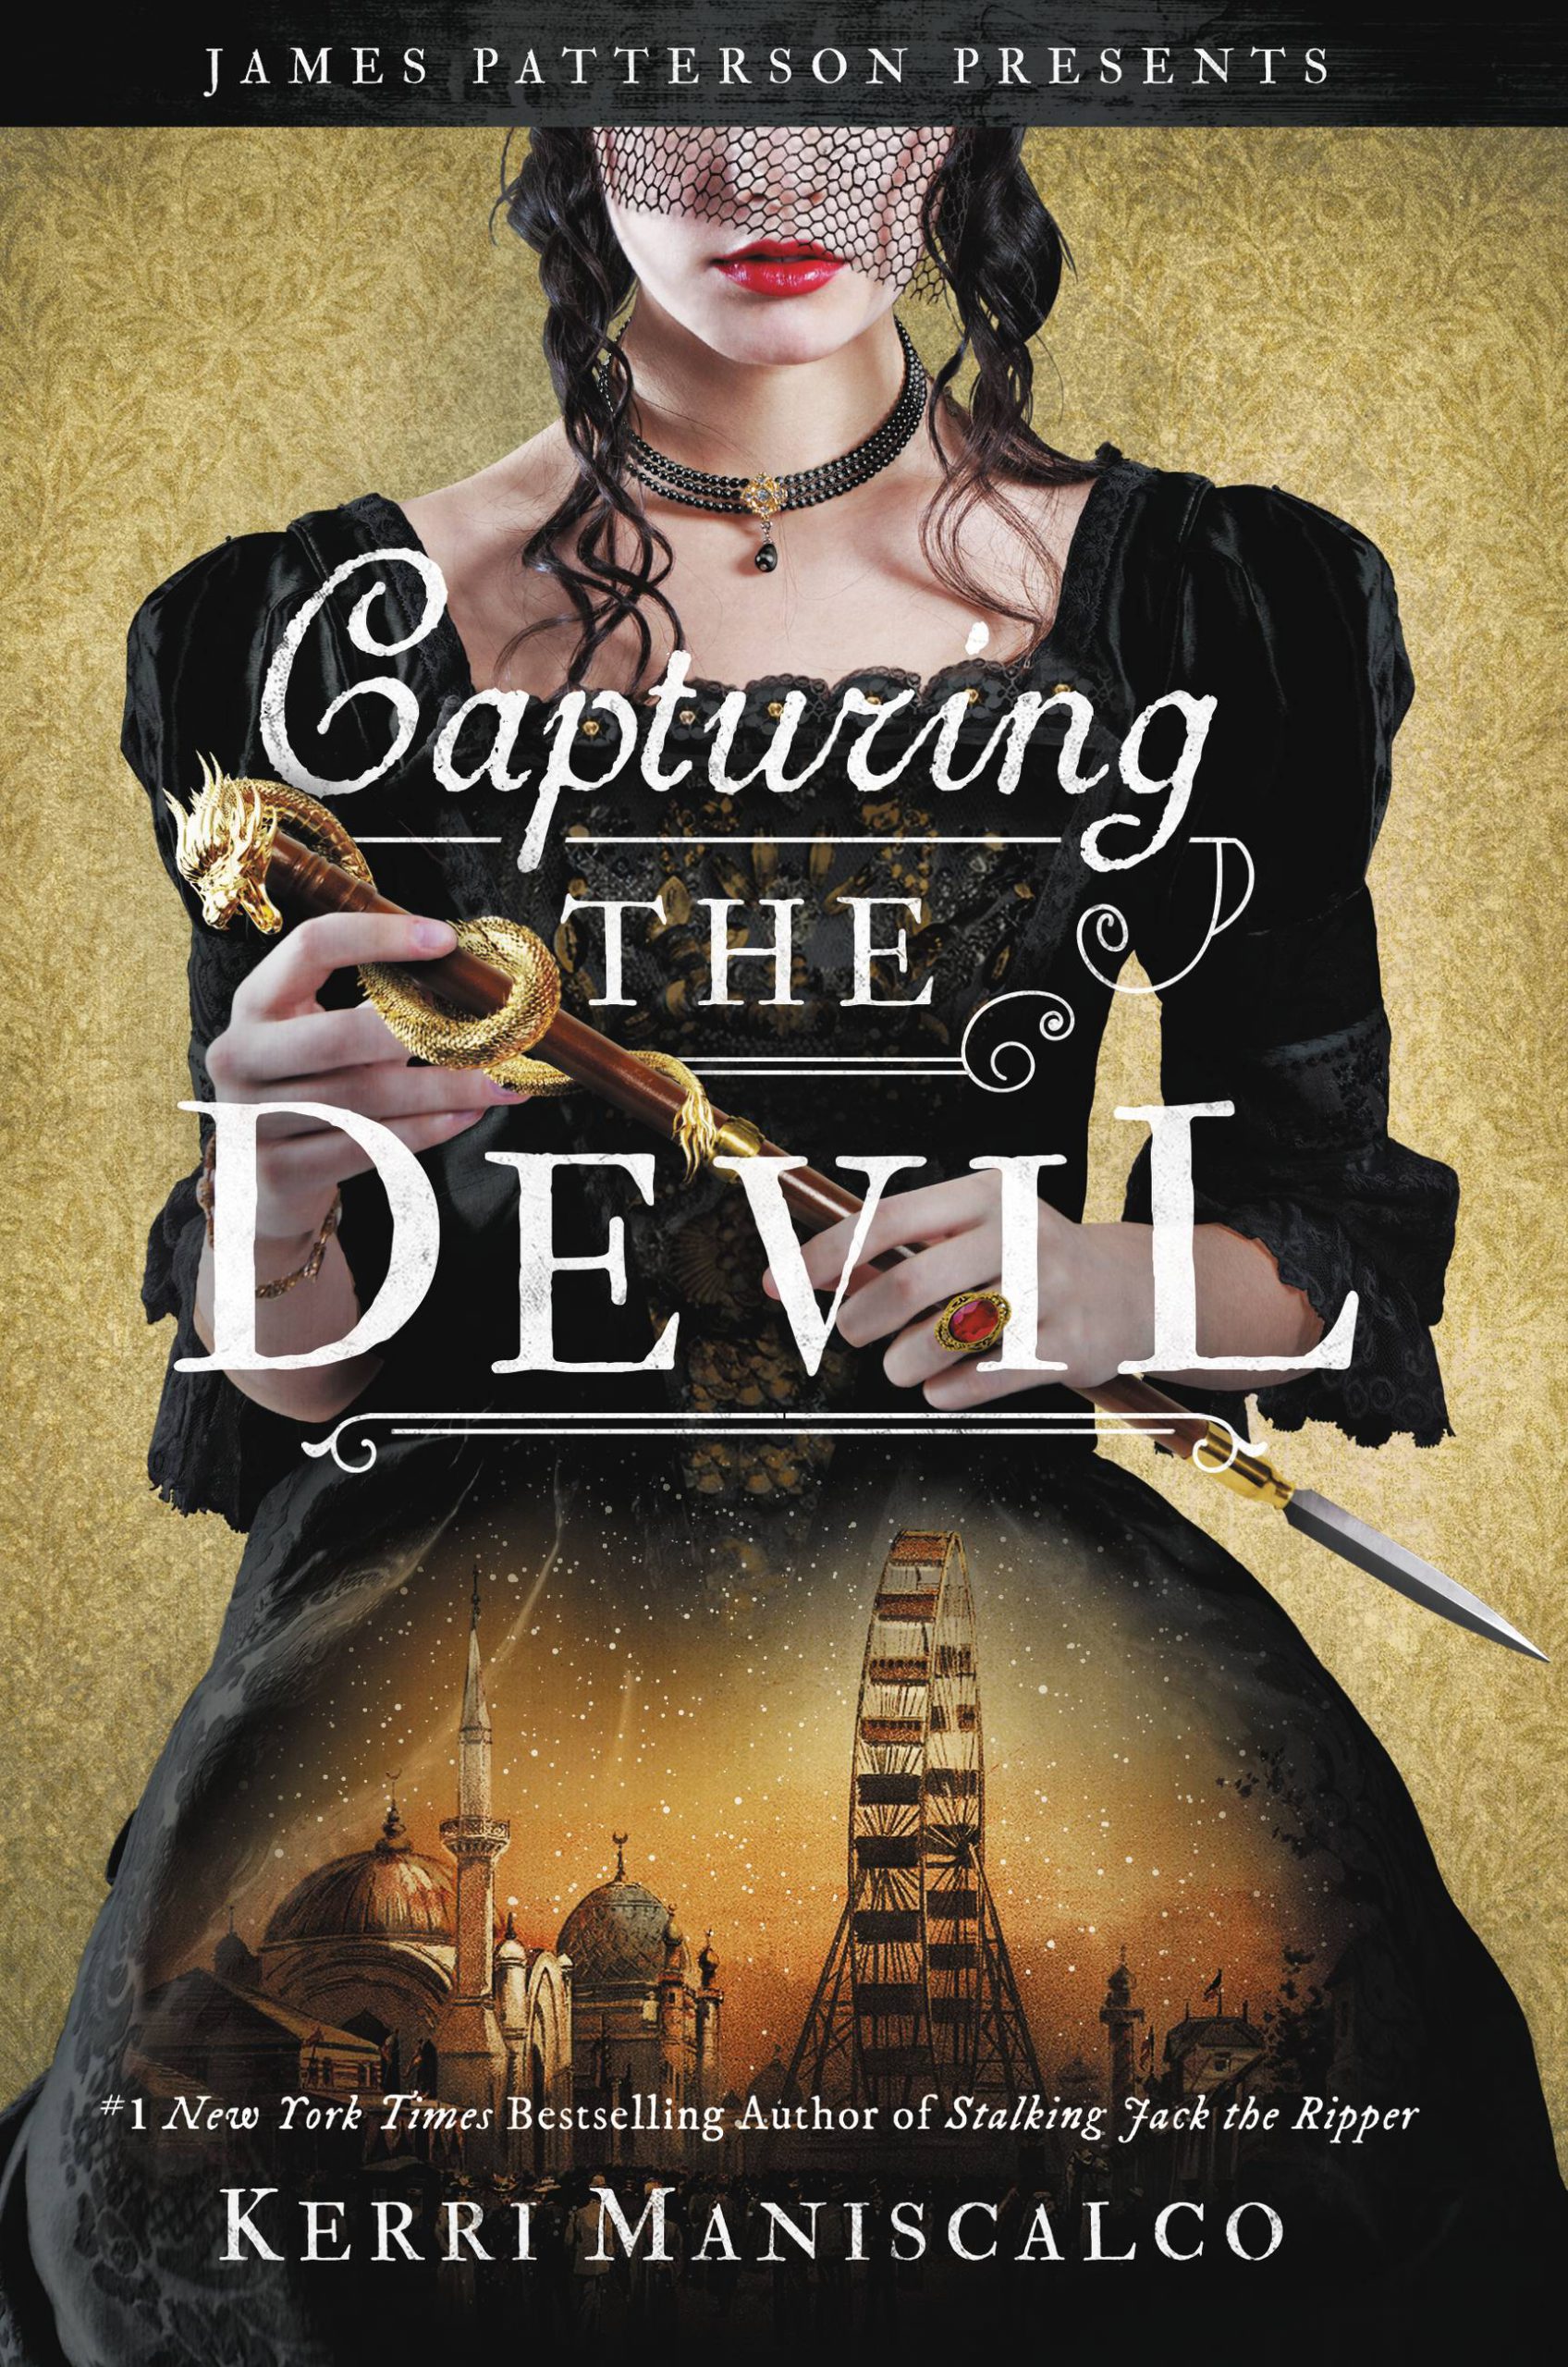 De boekomslag van Capturing the Devil van Kerri Maniscalco. Er staat een vrouw op met een kermis in de achtergrond.